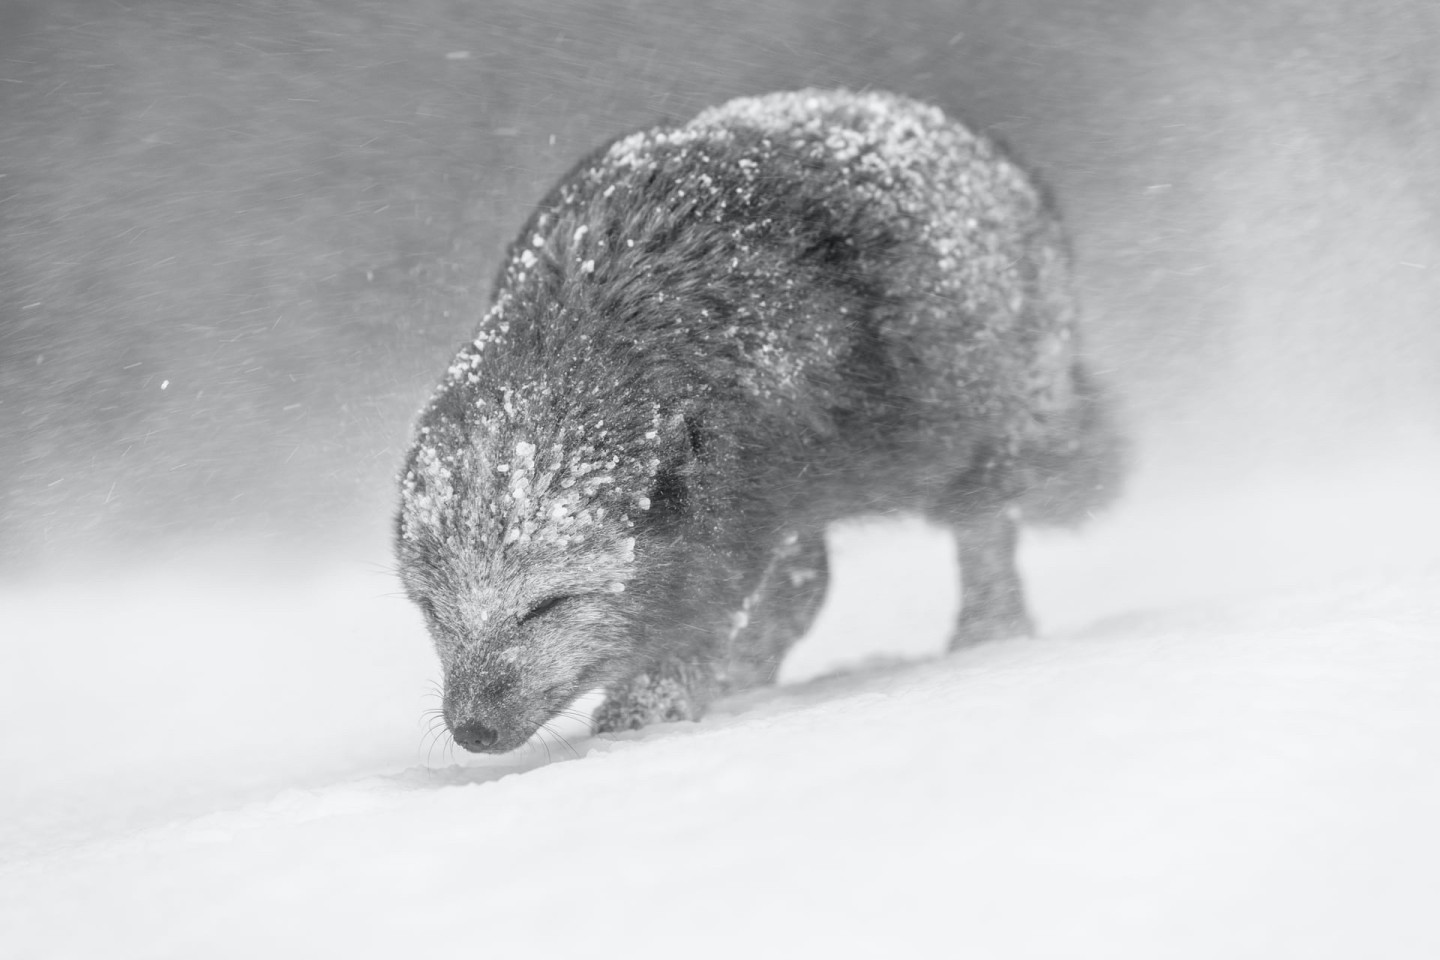 Песец, идущий сквозь снежную бурю в Исландии. Фото: Винс Бертон. Победитель в категории «Черно-белое фото»